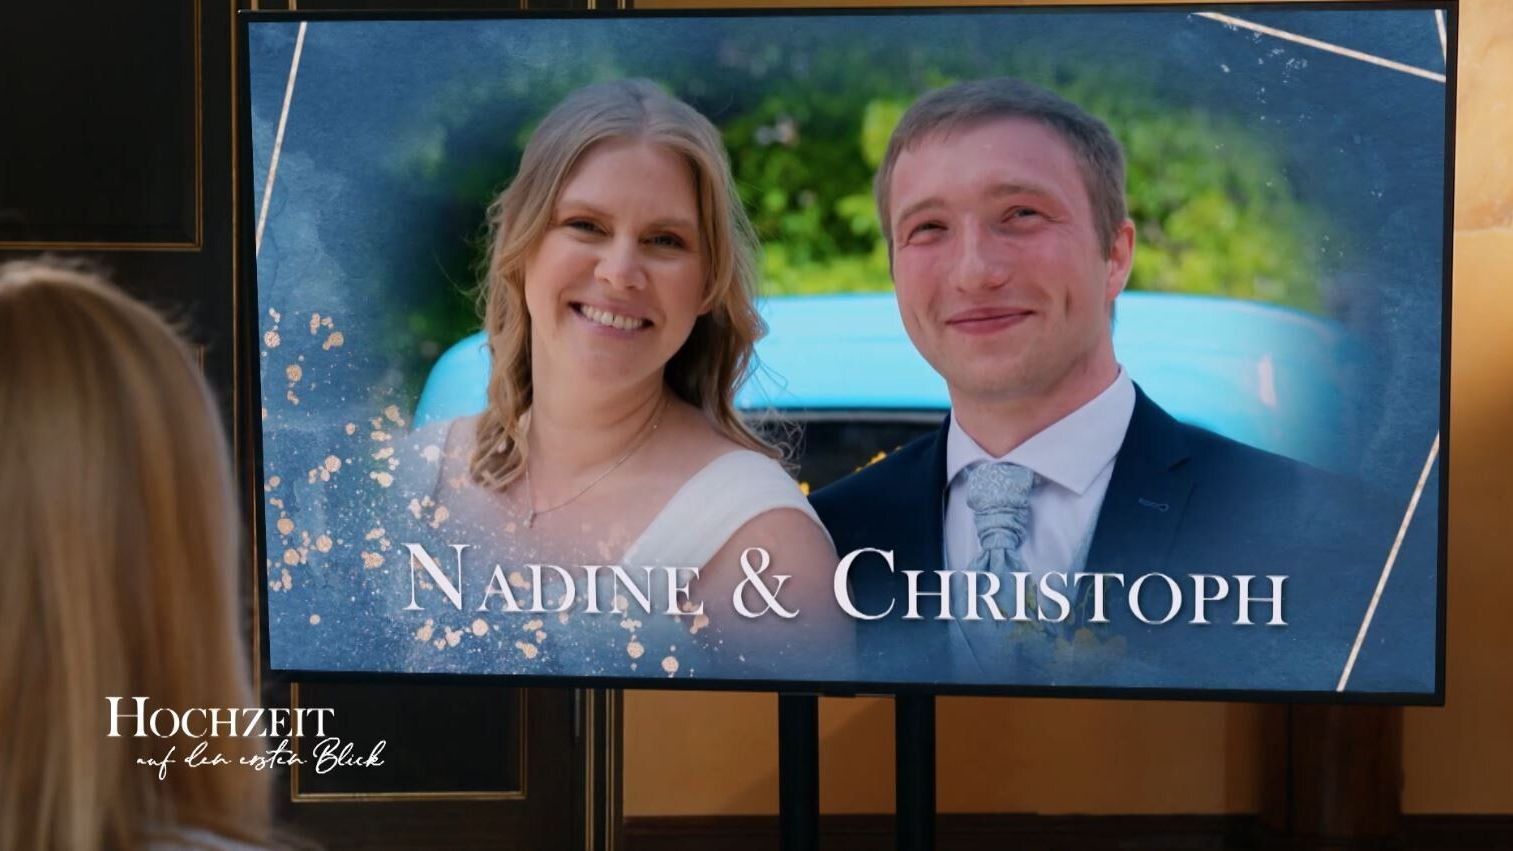 Christoph und Nadine von "Hochzeit auf den ersten Blick" 2022: eine Aufnahme aus glücklichen Zeiten.